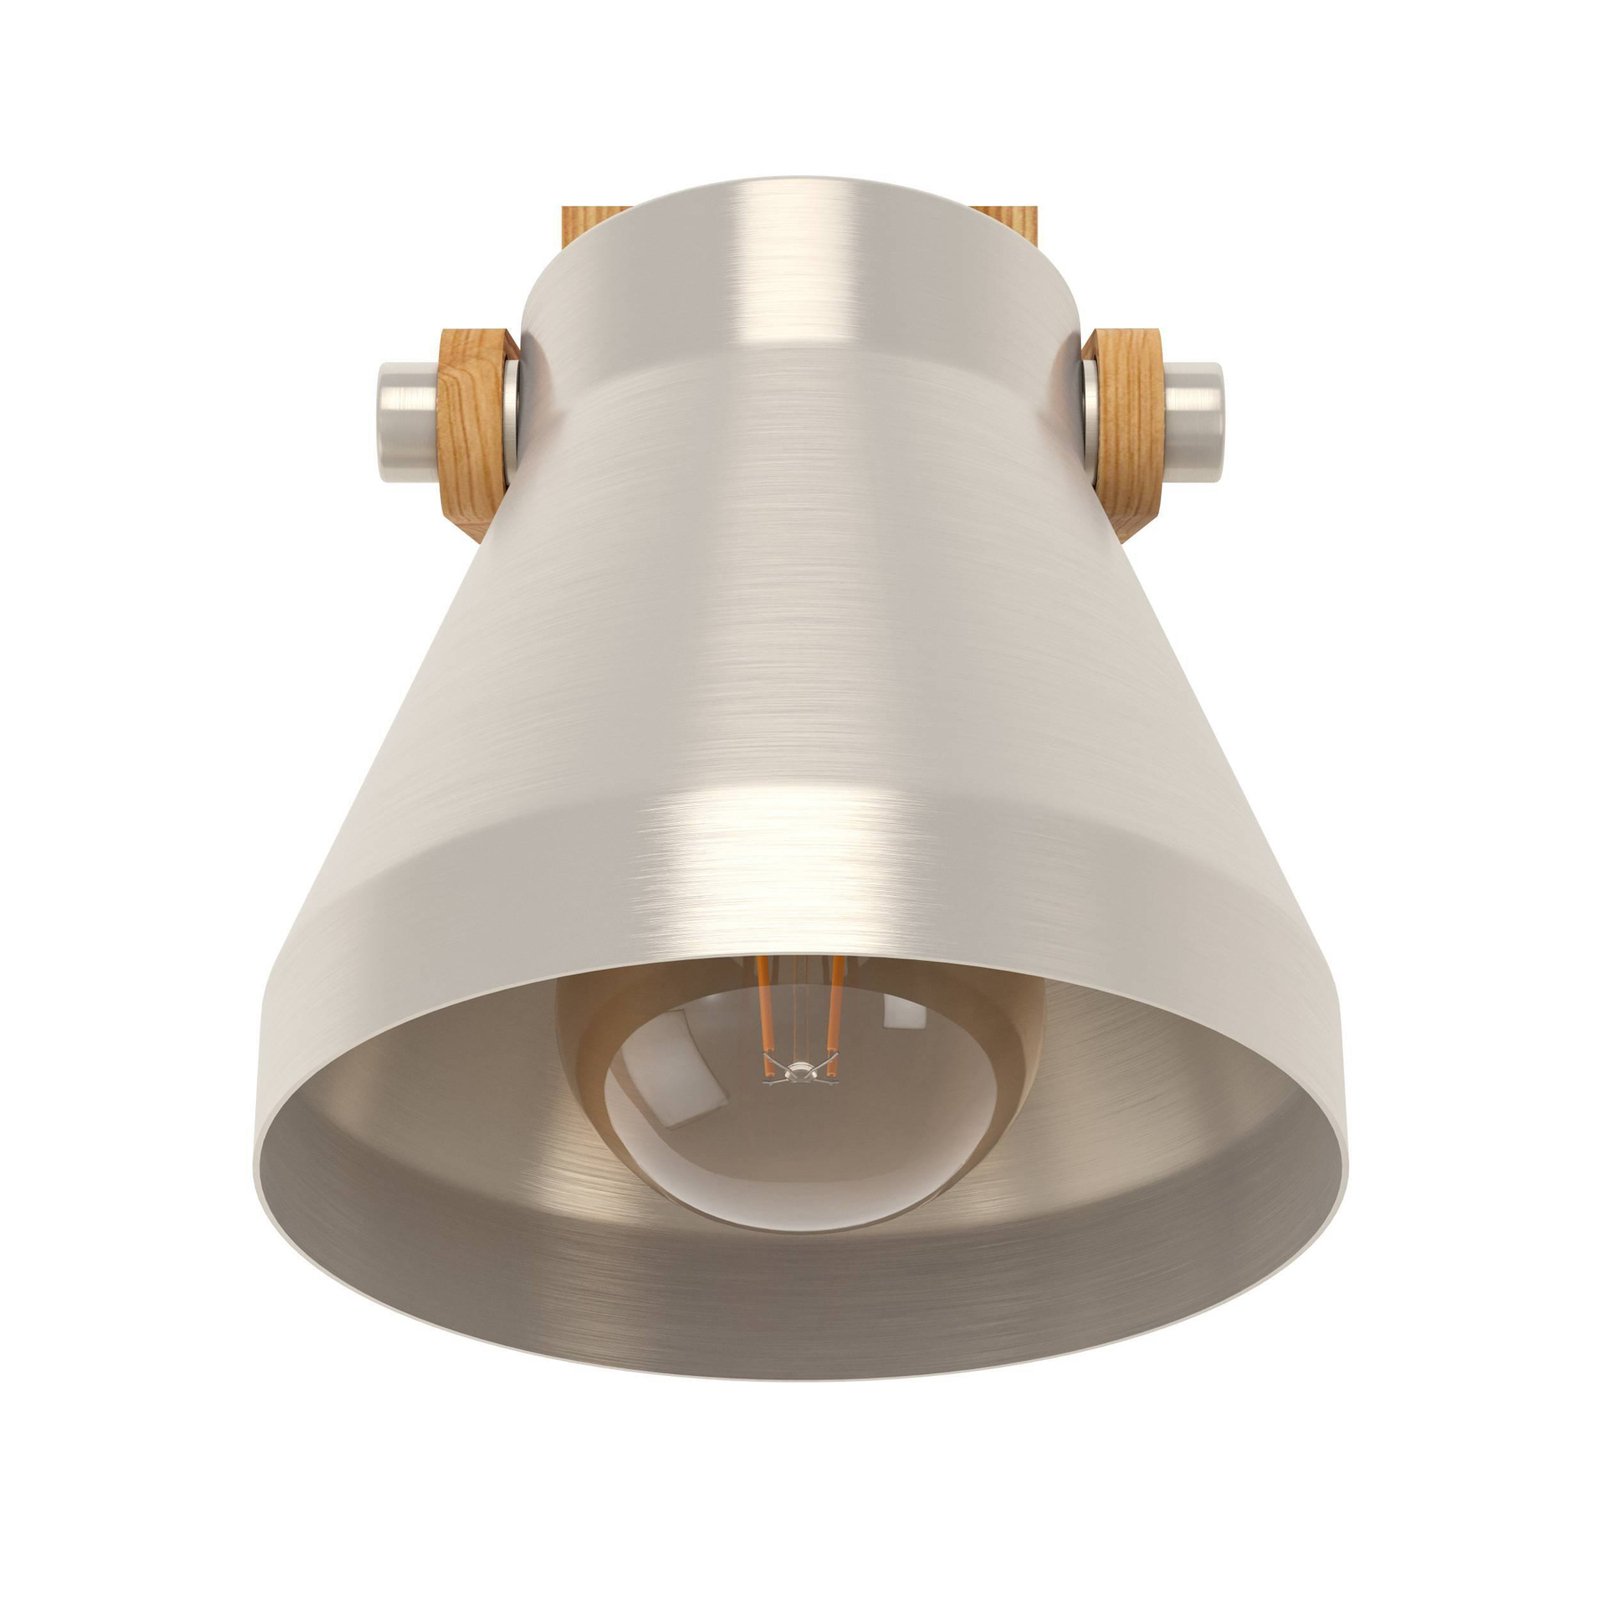 Nástenný reflektor Cawton, výška 19,5 cm, oceľ/hnedá farba, oceľ